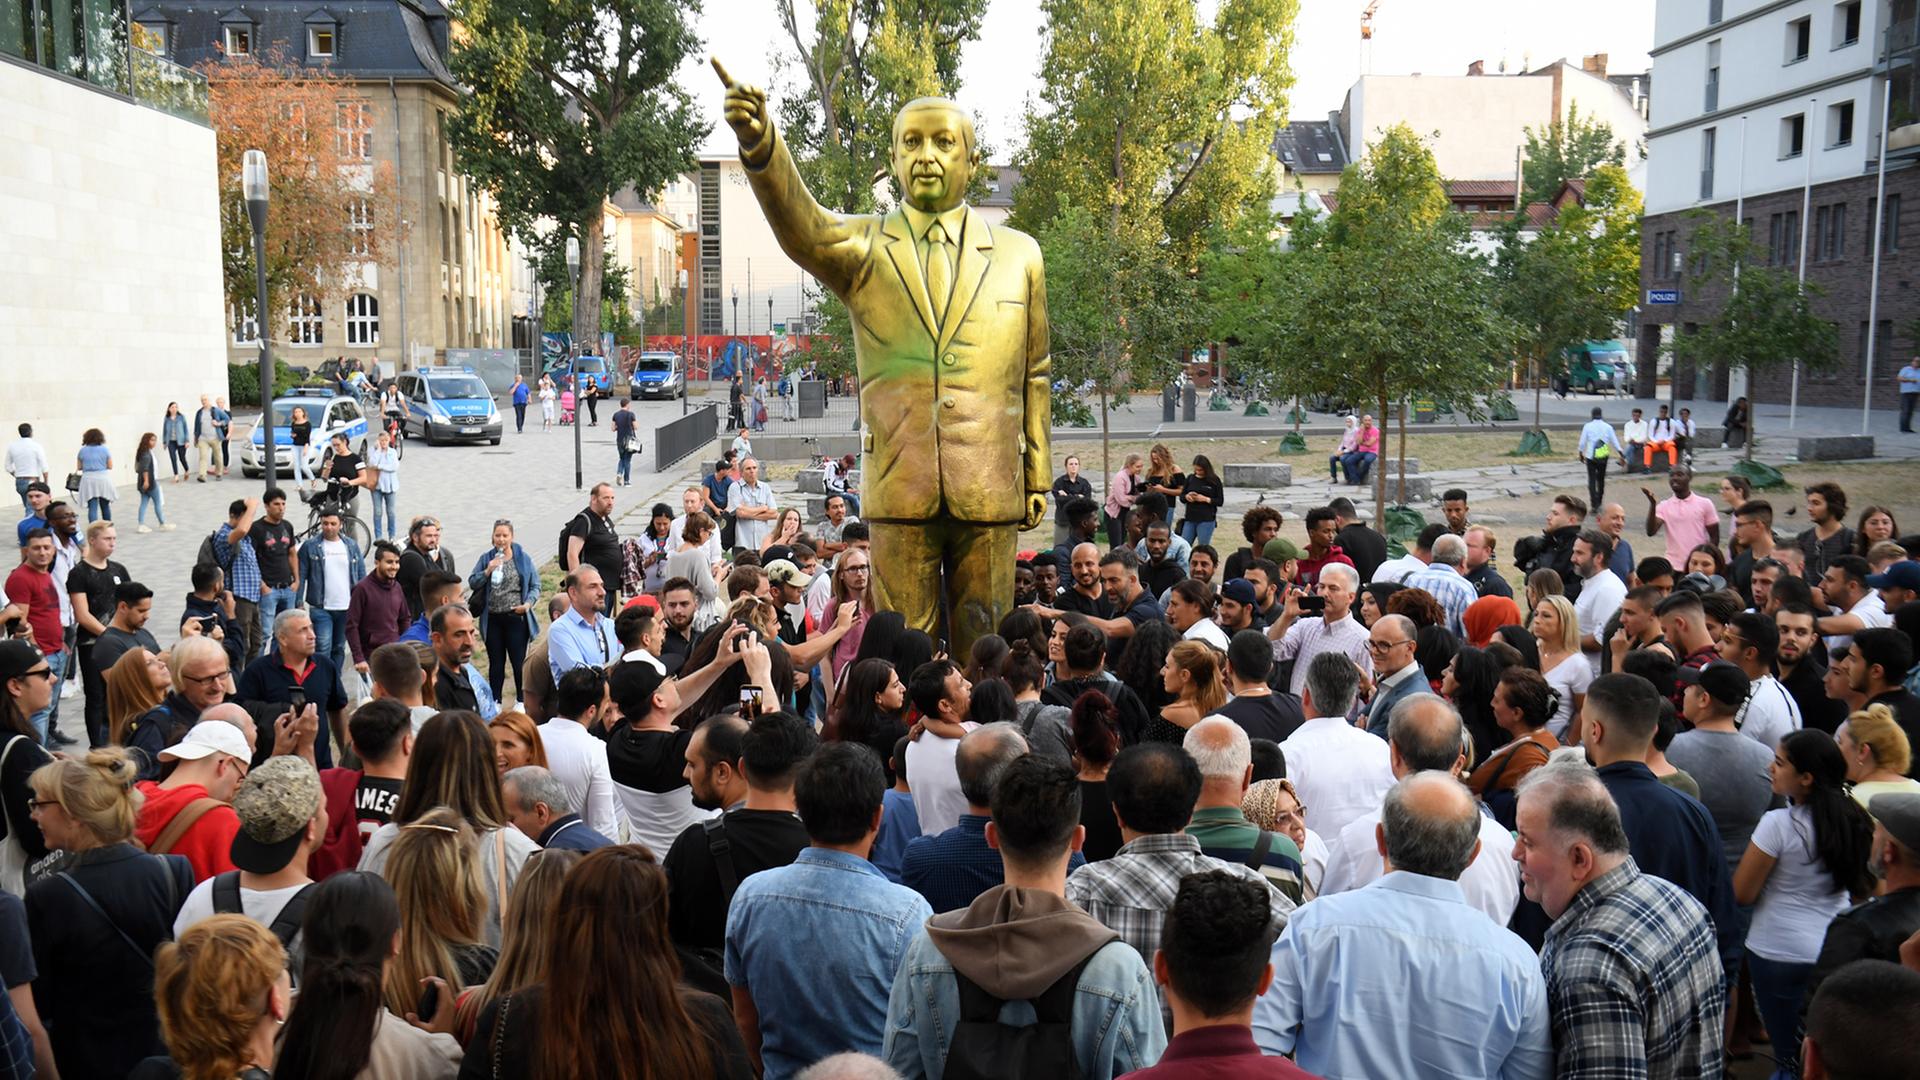 Zahlreiche Menschen haben sich auf dem Platz der Deutschen Einheit vor einer goldenen Erdogan-Statue in Wiesbaden versammelt. Die Statue wurde im Rahmen des Kunstfestivals "Wiesbaden Biennale" aufgestellt.